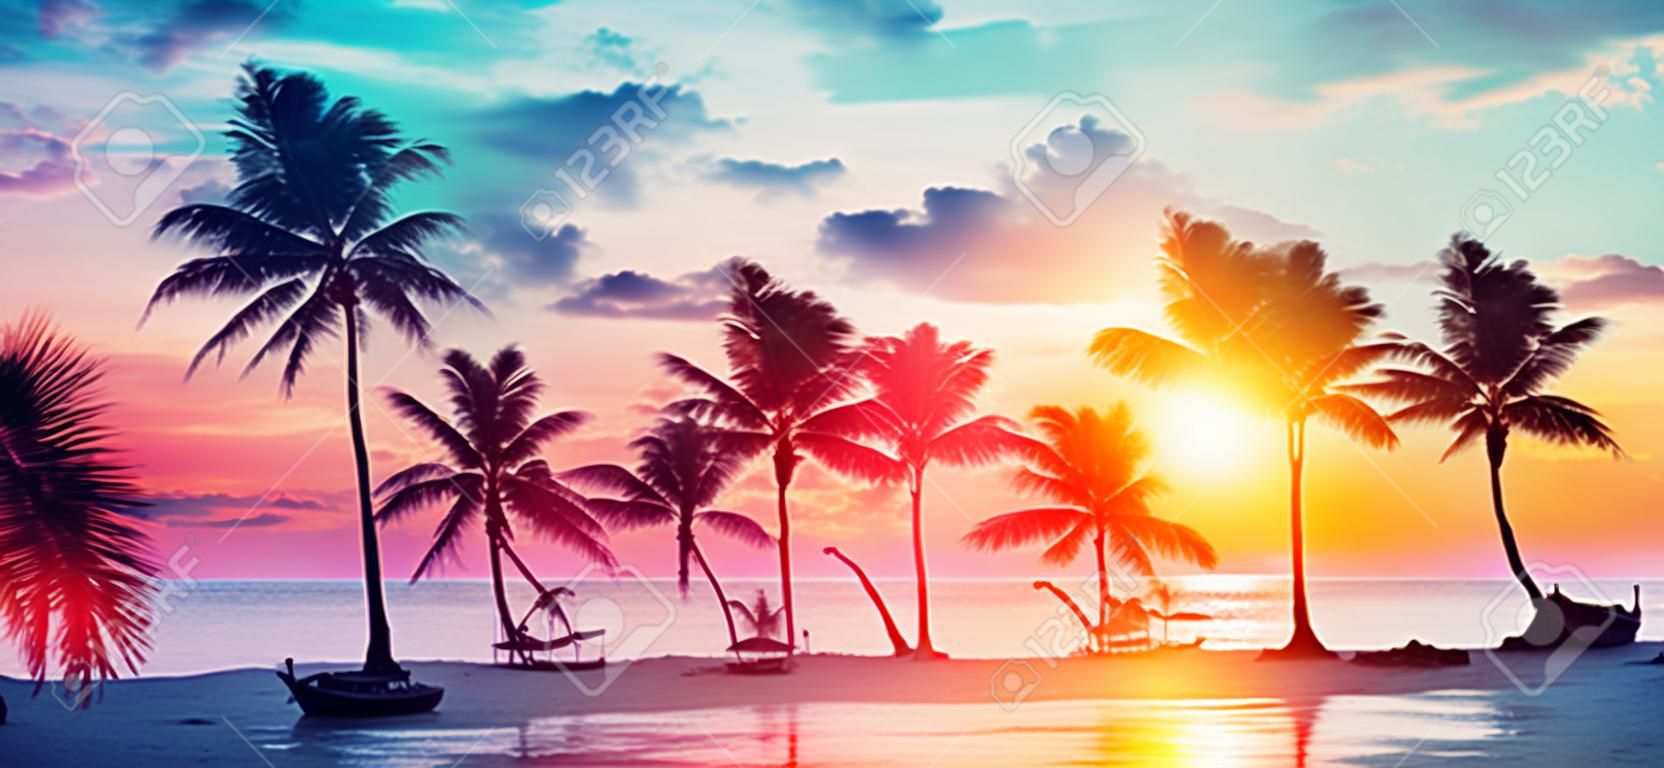 Siluetas de palmeras en la playa tropical al atardecer - Colores vintage modernos